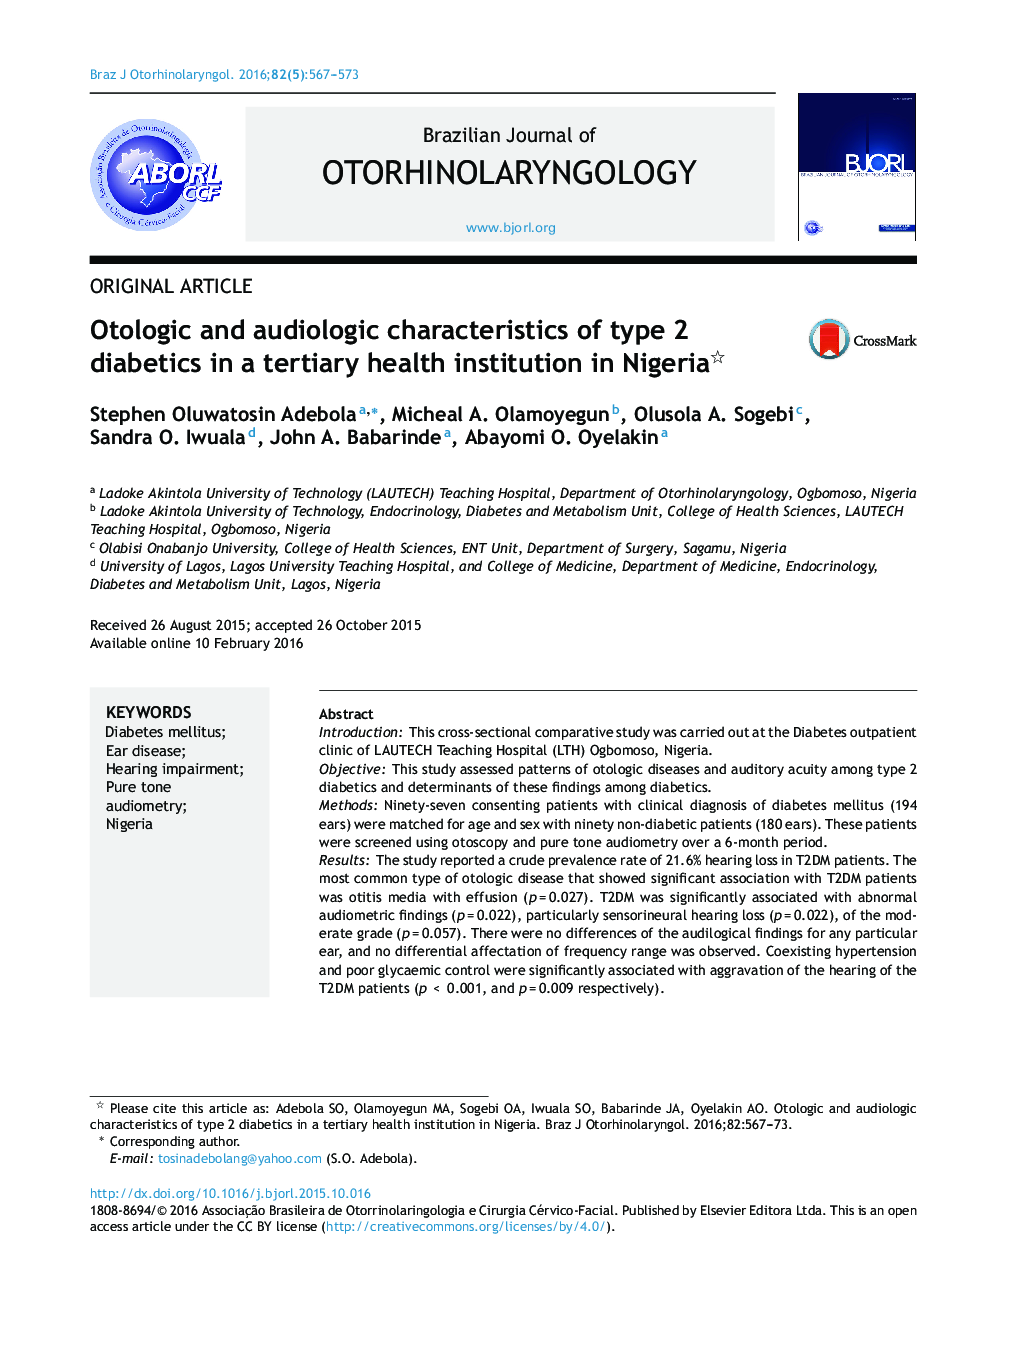 ویژگی های اتولوژیک و شنوایی دیابت نوع 2 در یک موسسه بهداشتی عالی در نیجریه 